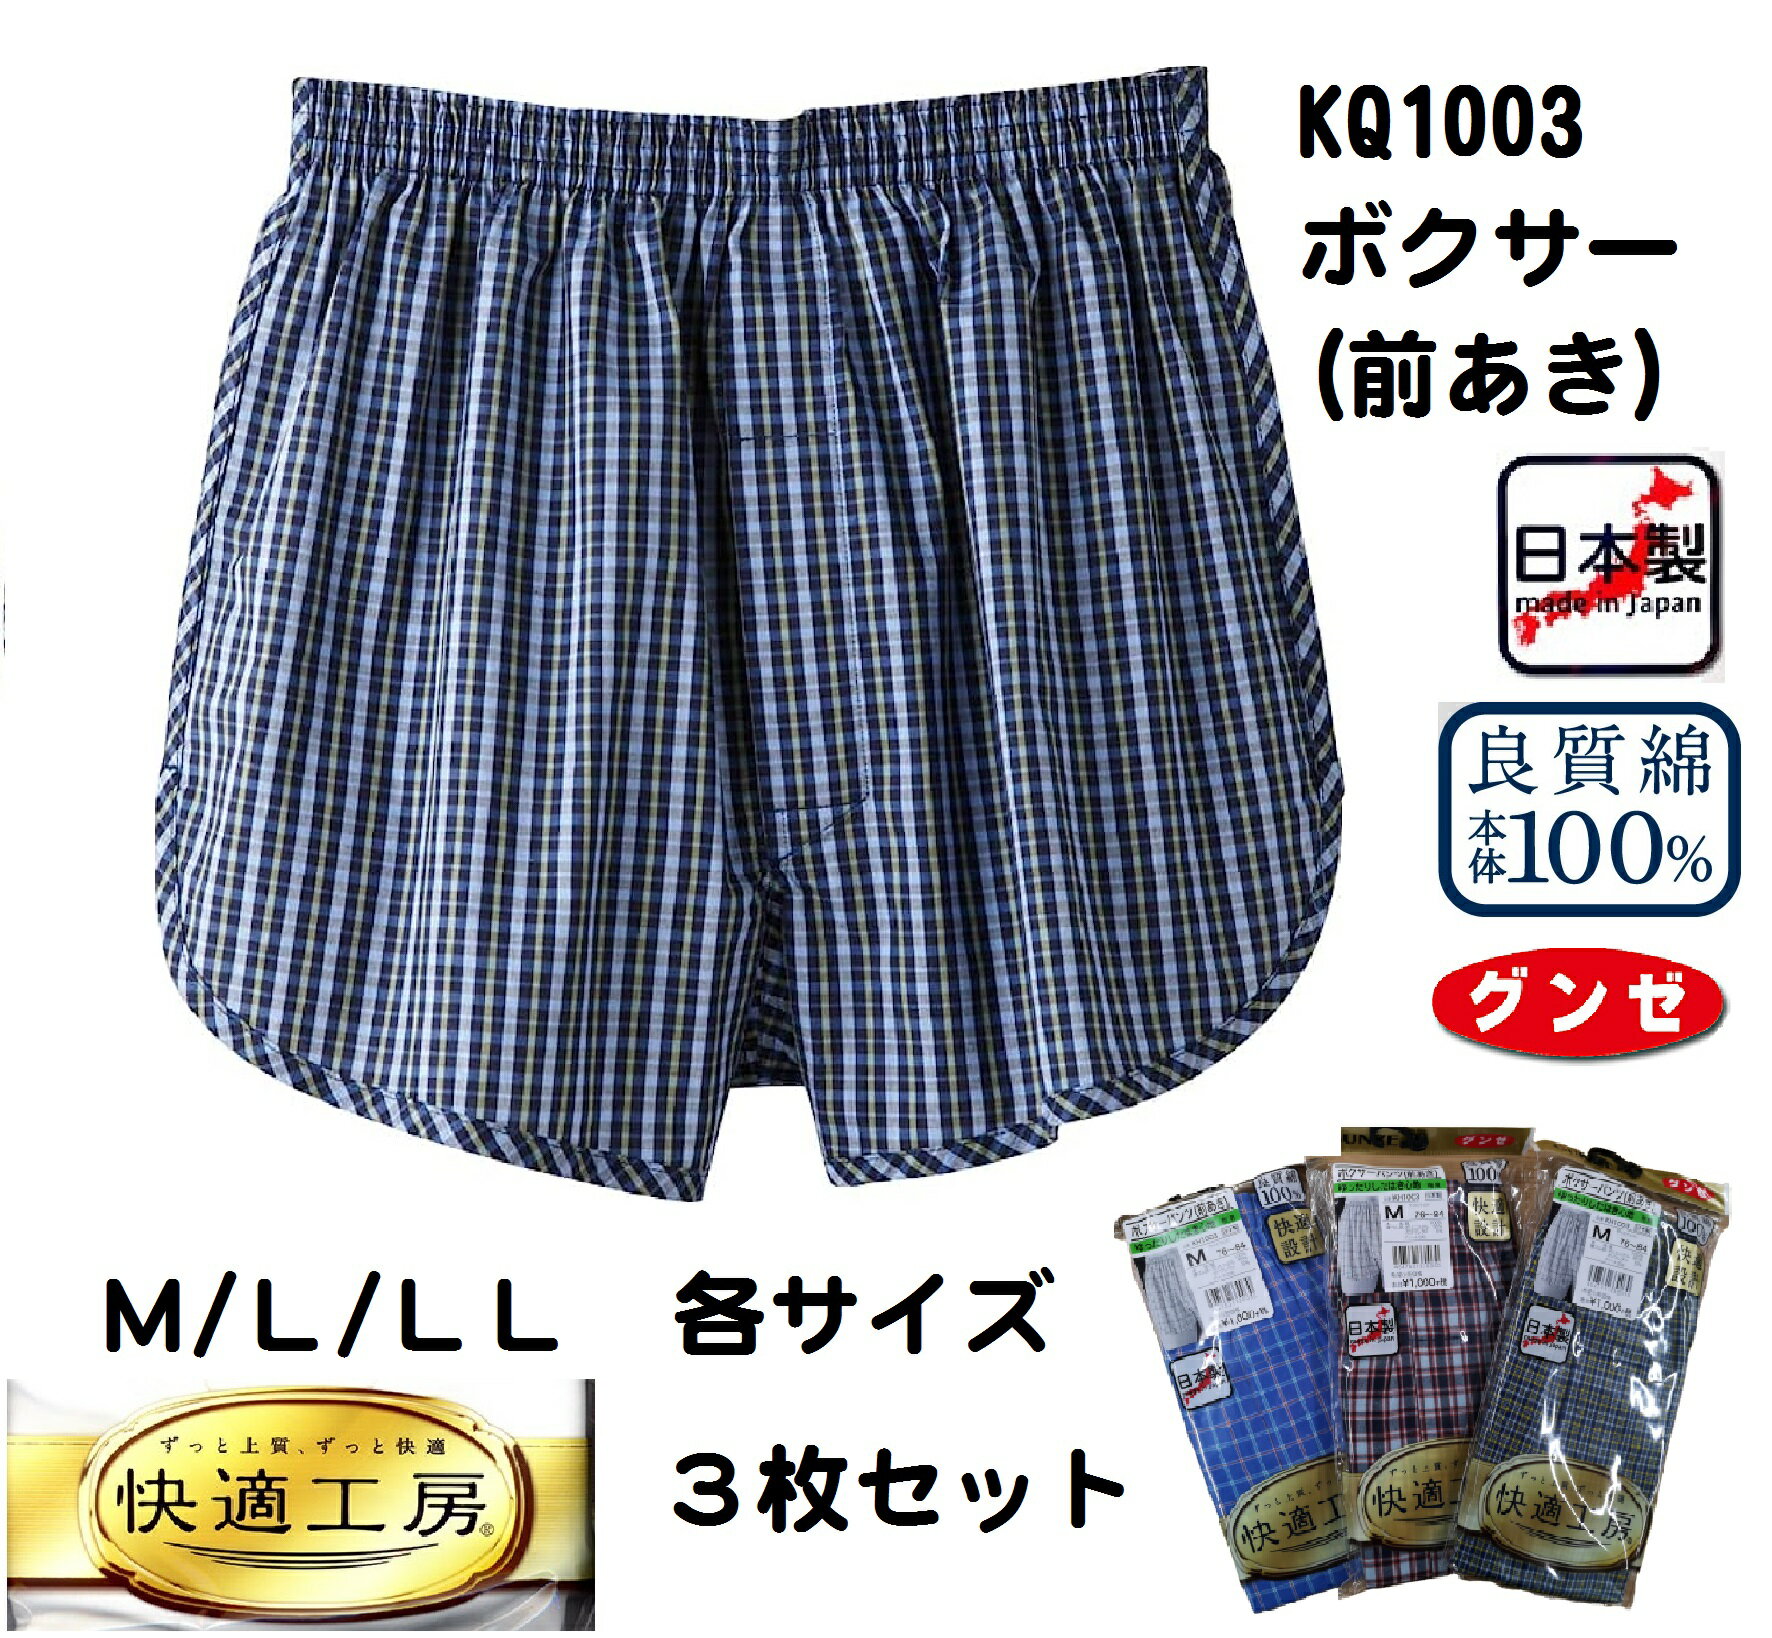 ★renewal★KQ1003-3SET グンゼ 日本製 布帛 サイズ M/L/LL 紳士肌着 KH1003の後続品です アソート 色柄おまかせ